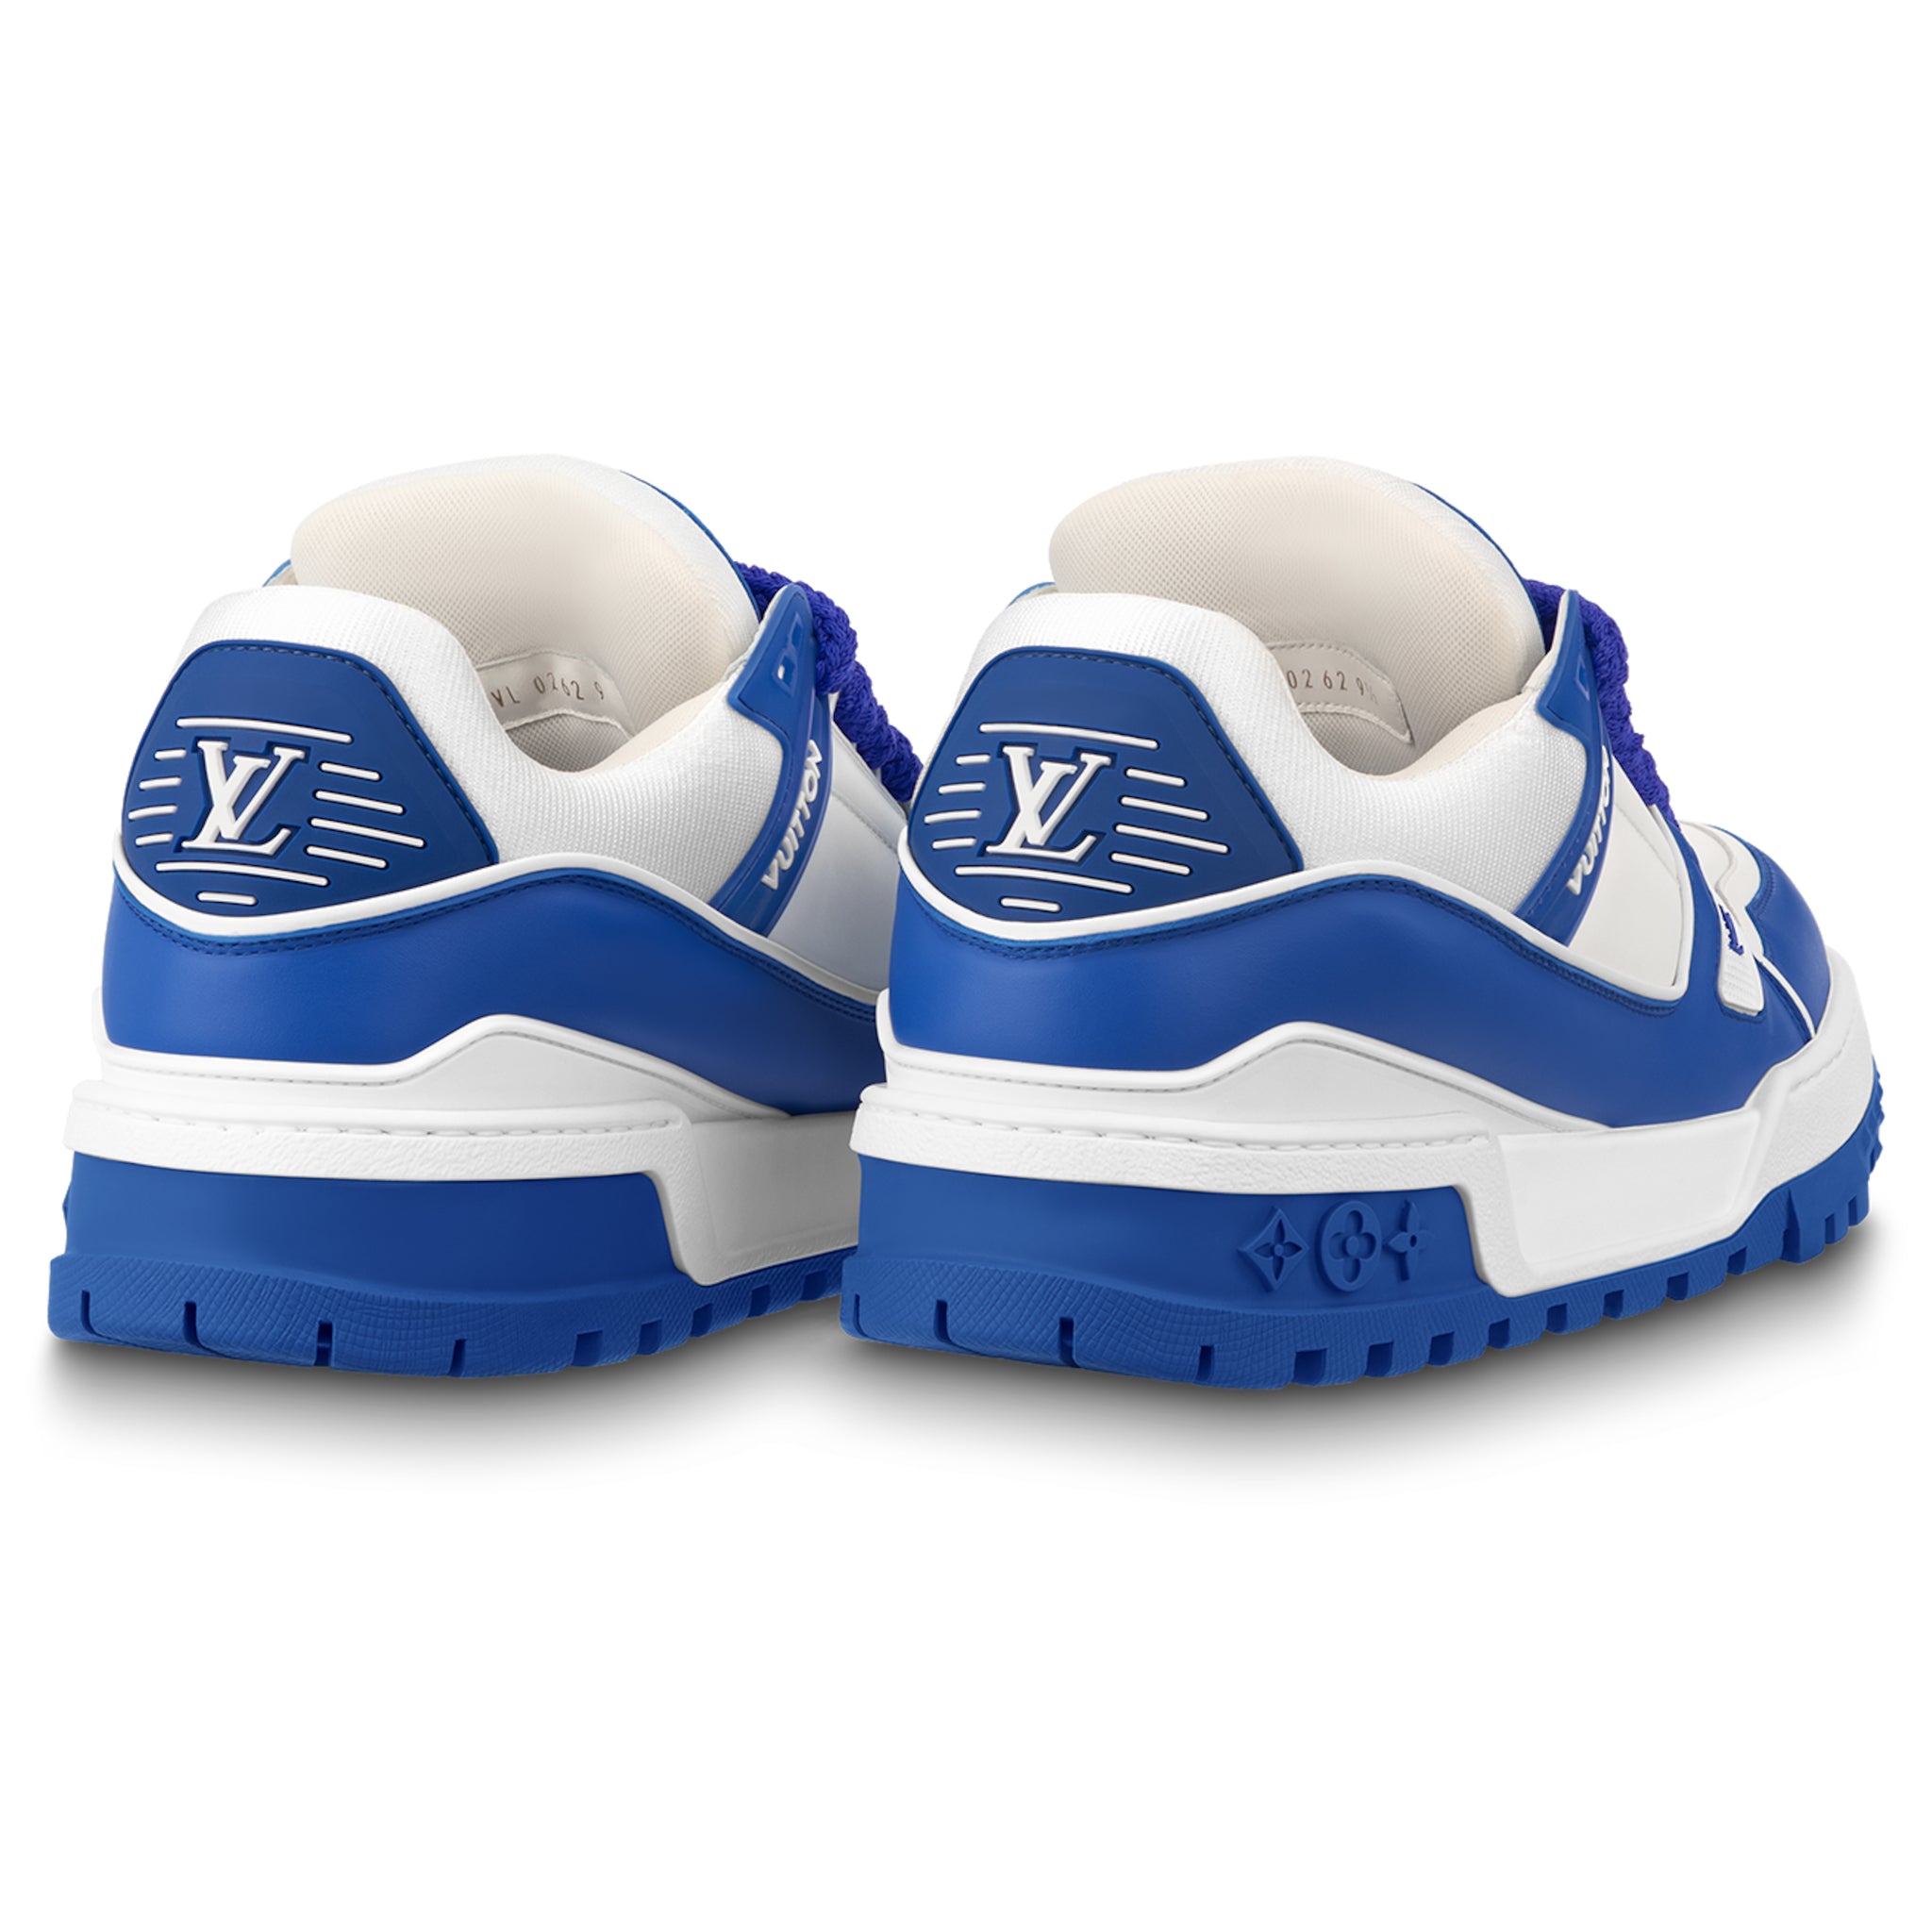 Louis Vuitton LV Trainer Maxi Sneaker Blue. Size 08.0